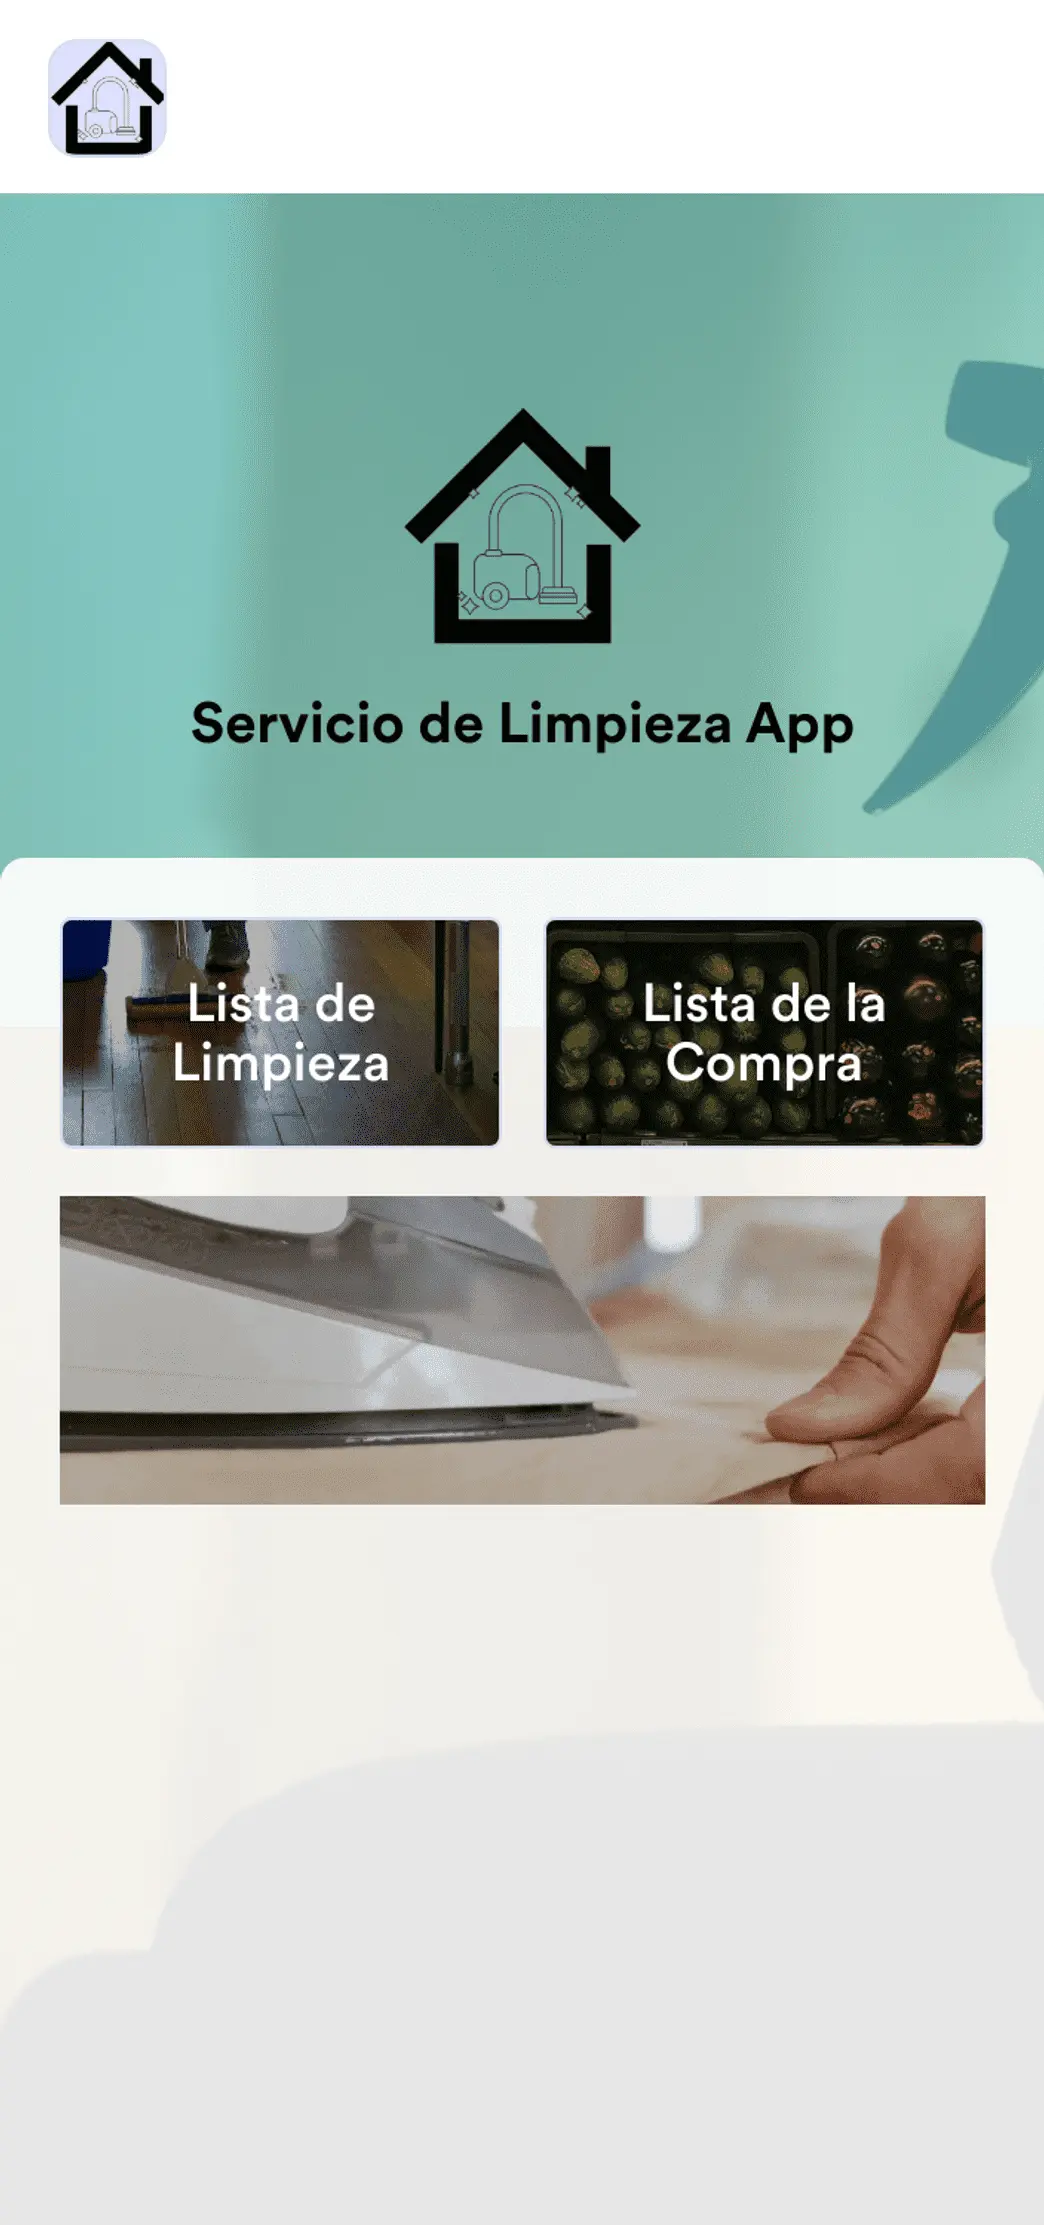 Servicio de Limpieza App